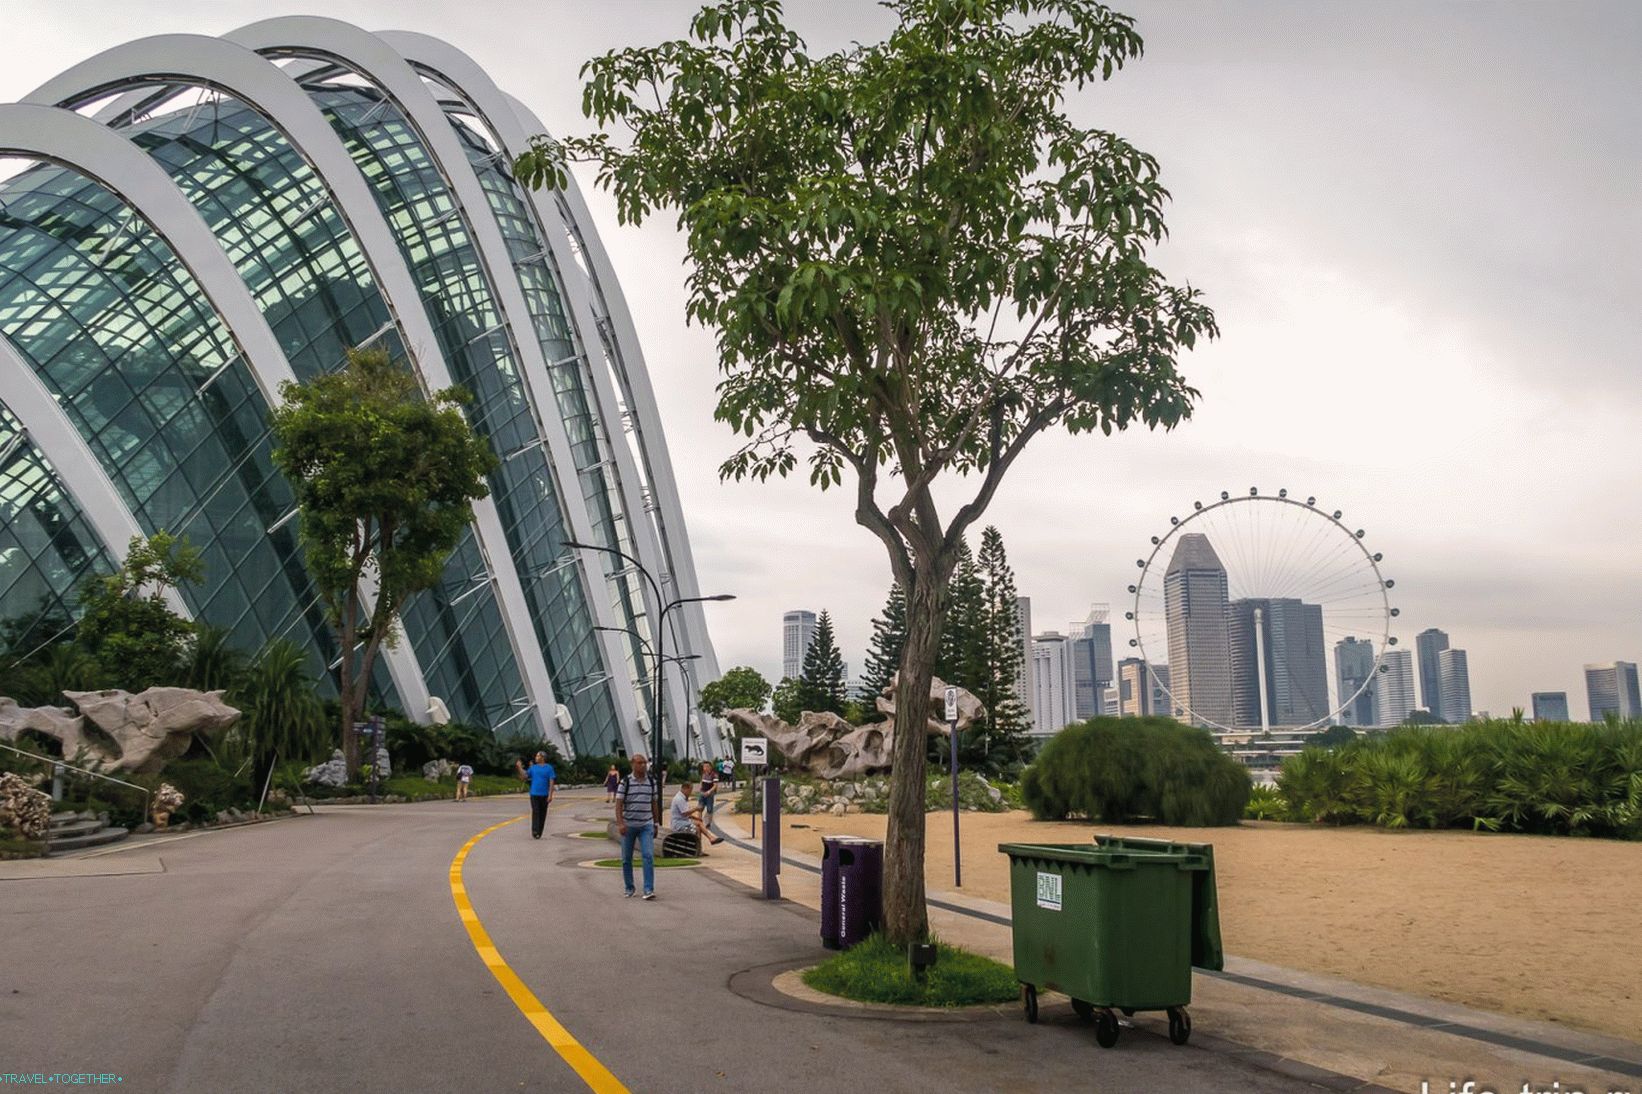 Szingapúr-öböl kertjei - a fő attrakció